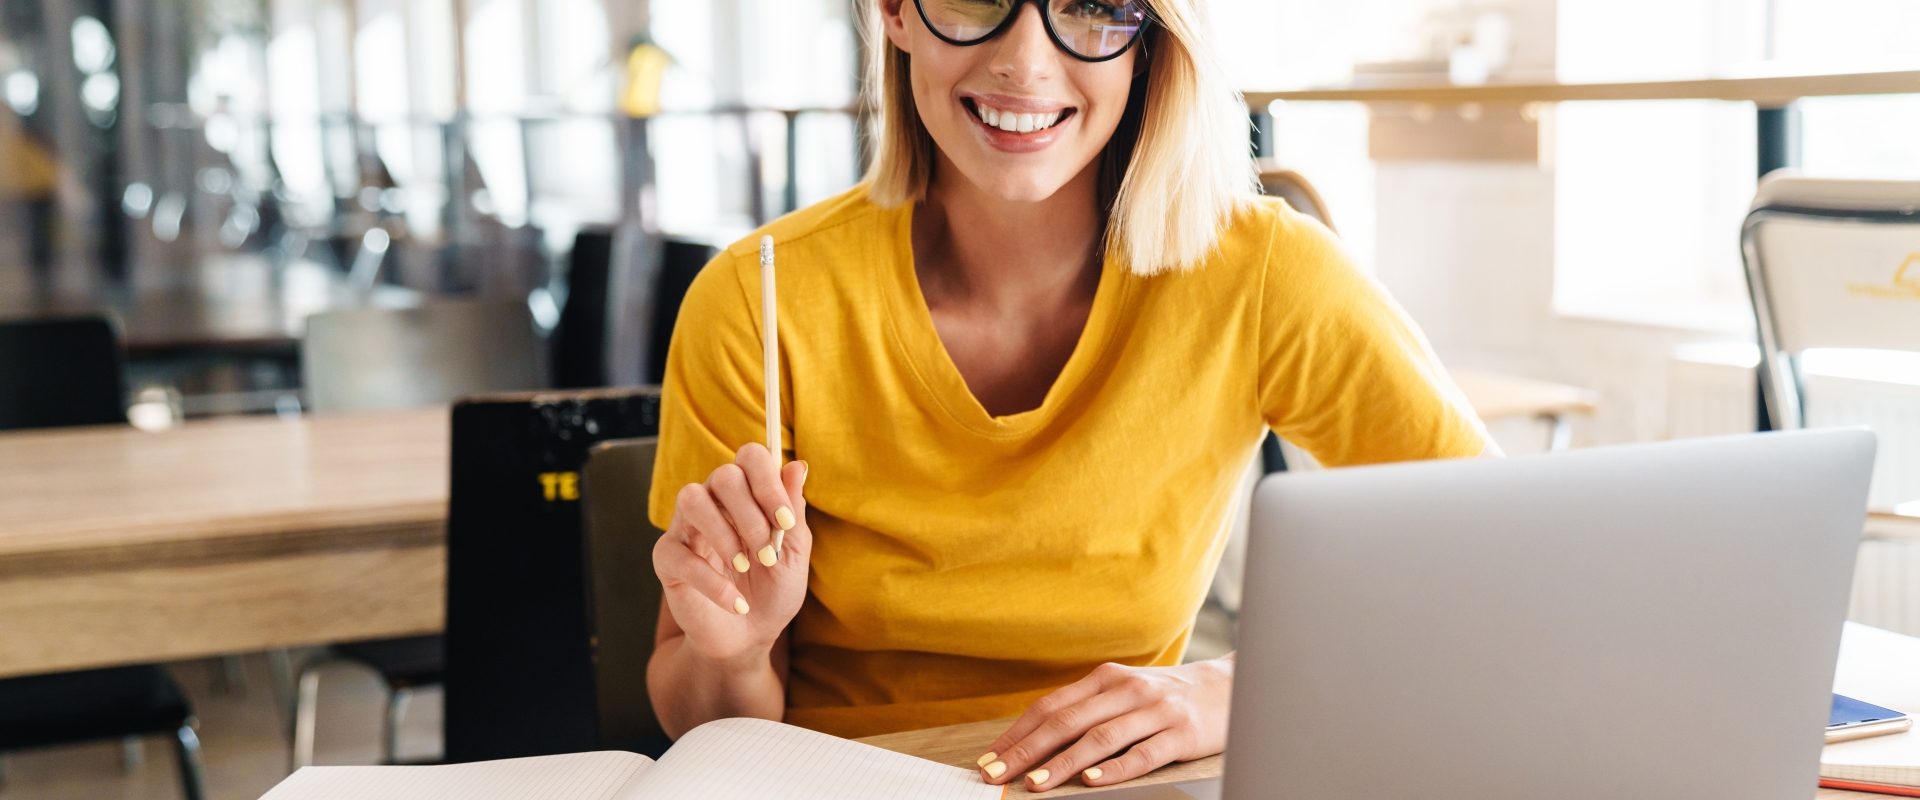 Iloraz inteligencji - czy jesteśmy w stanie zwiększyć swoje IQ? Uśmiechnięta kobieta w okularach i żółtym swetrze siedzi przed laptopem.